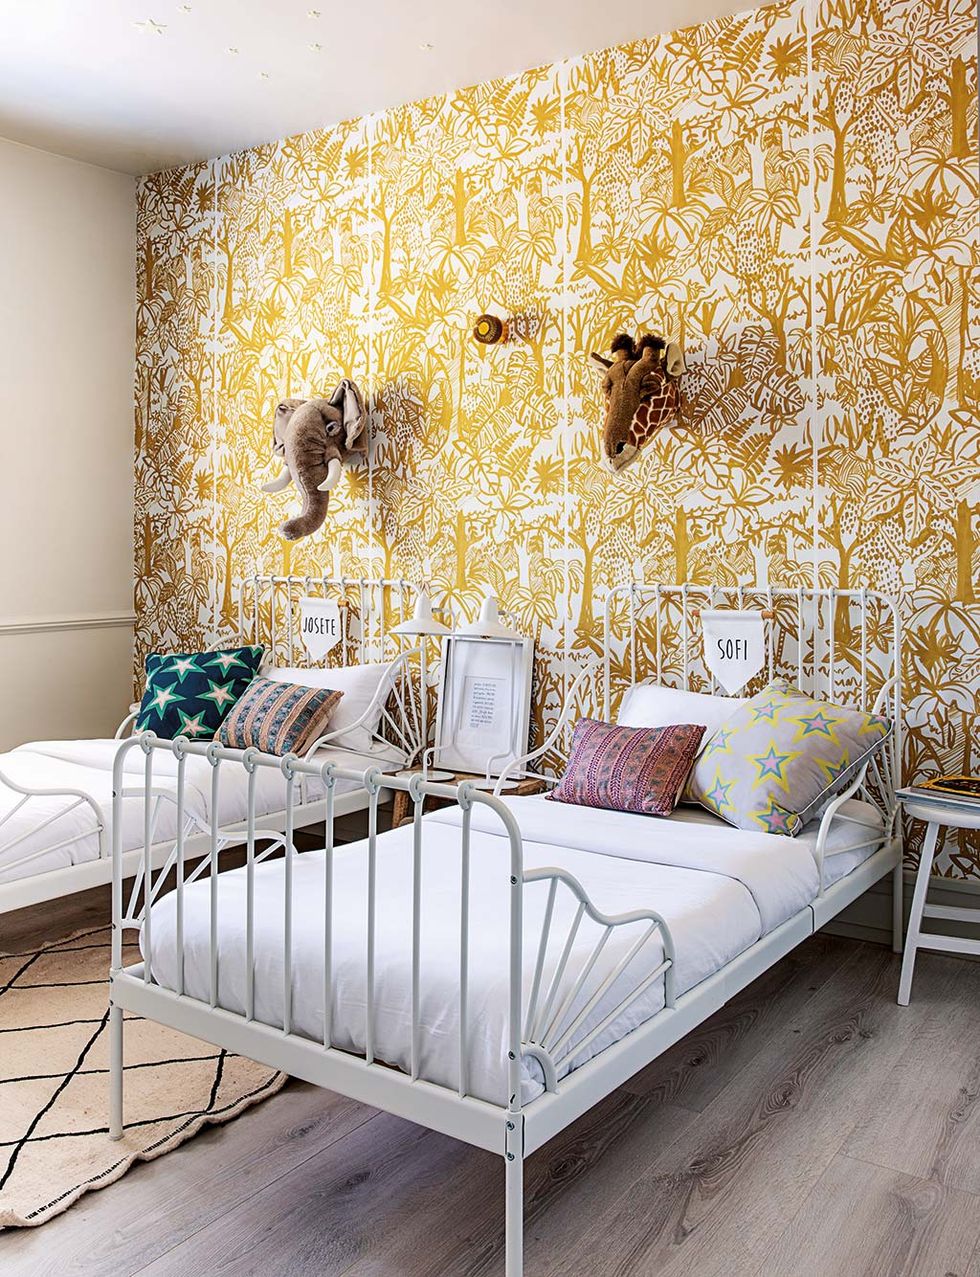 Una habitación infantil de estilo boho con papel pintado